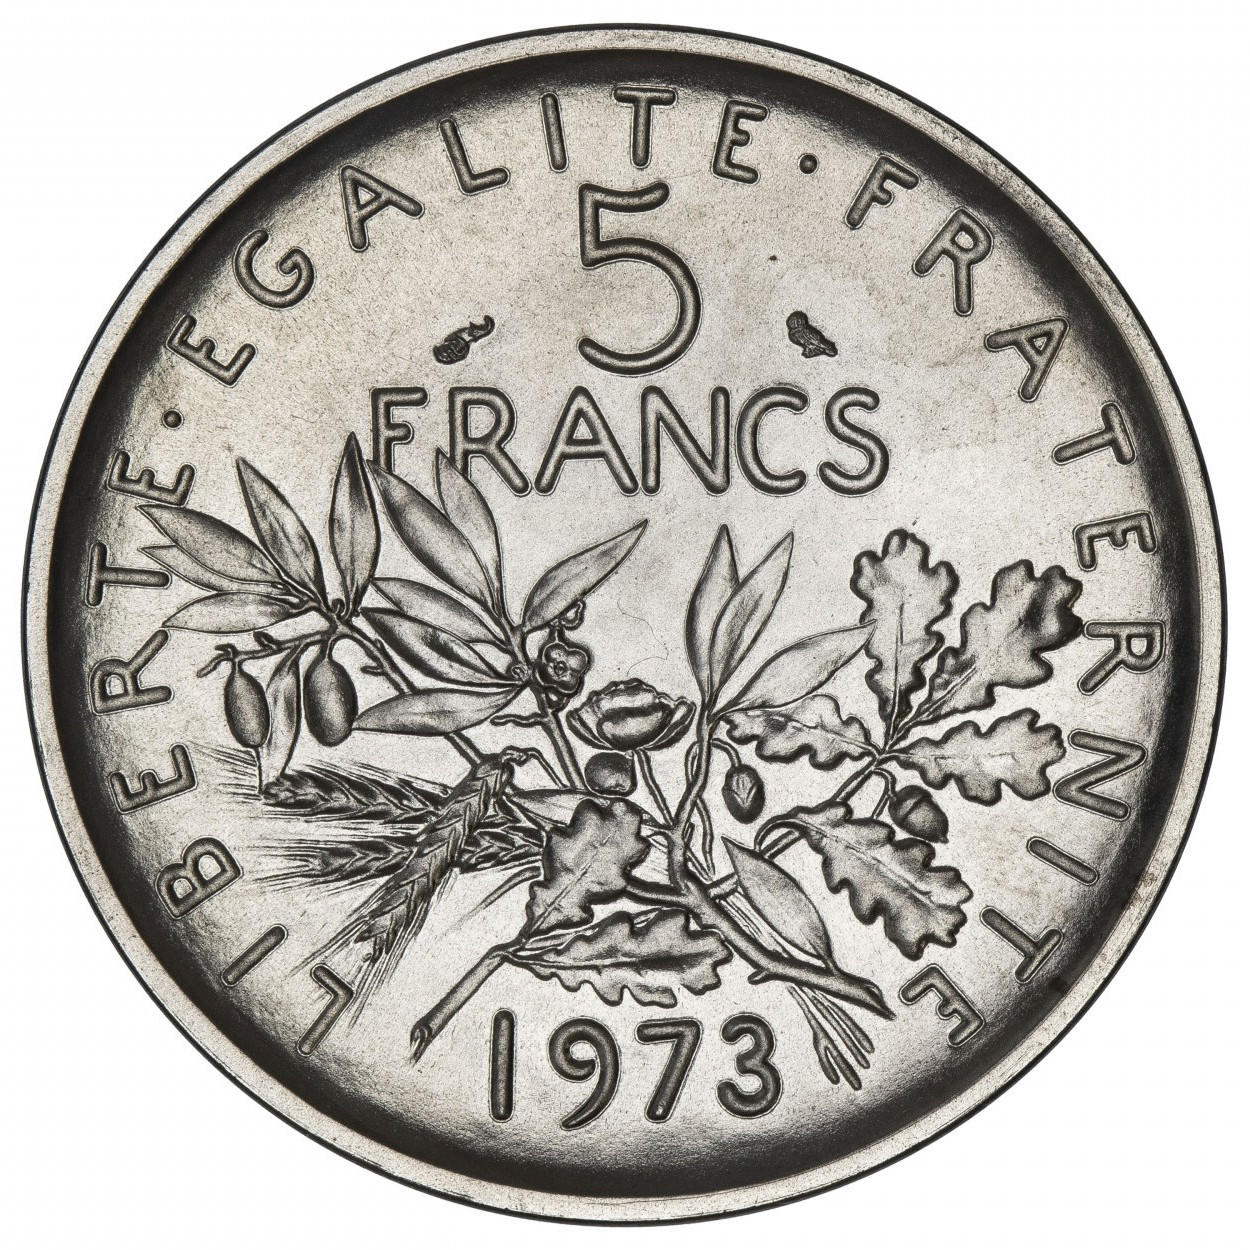 Piéfort de 5 francs Semeuse - 1973 - Paris revers